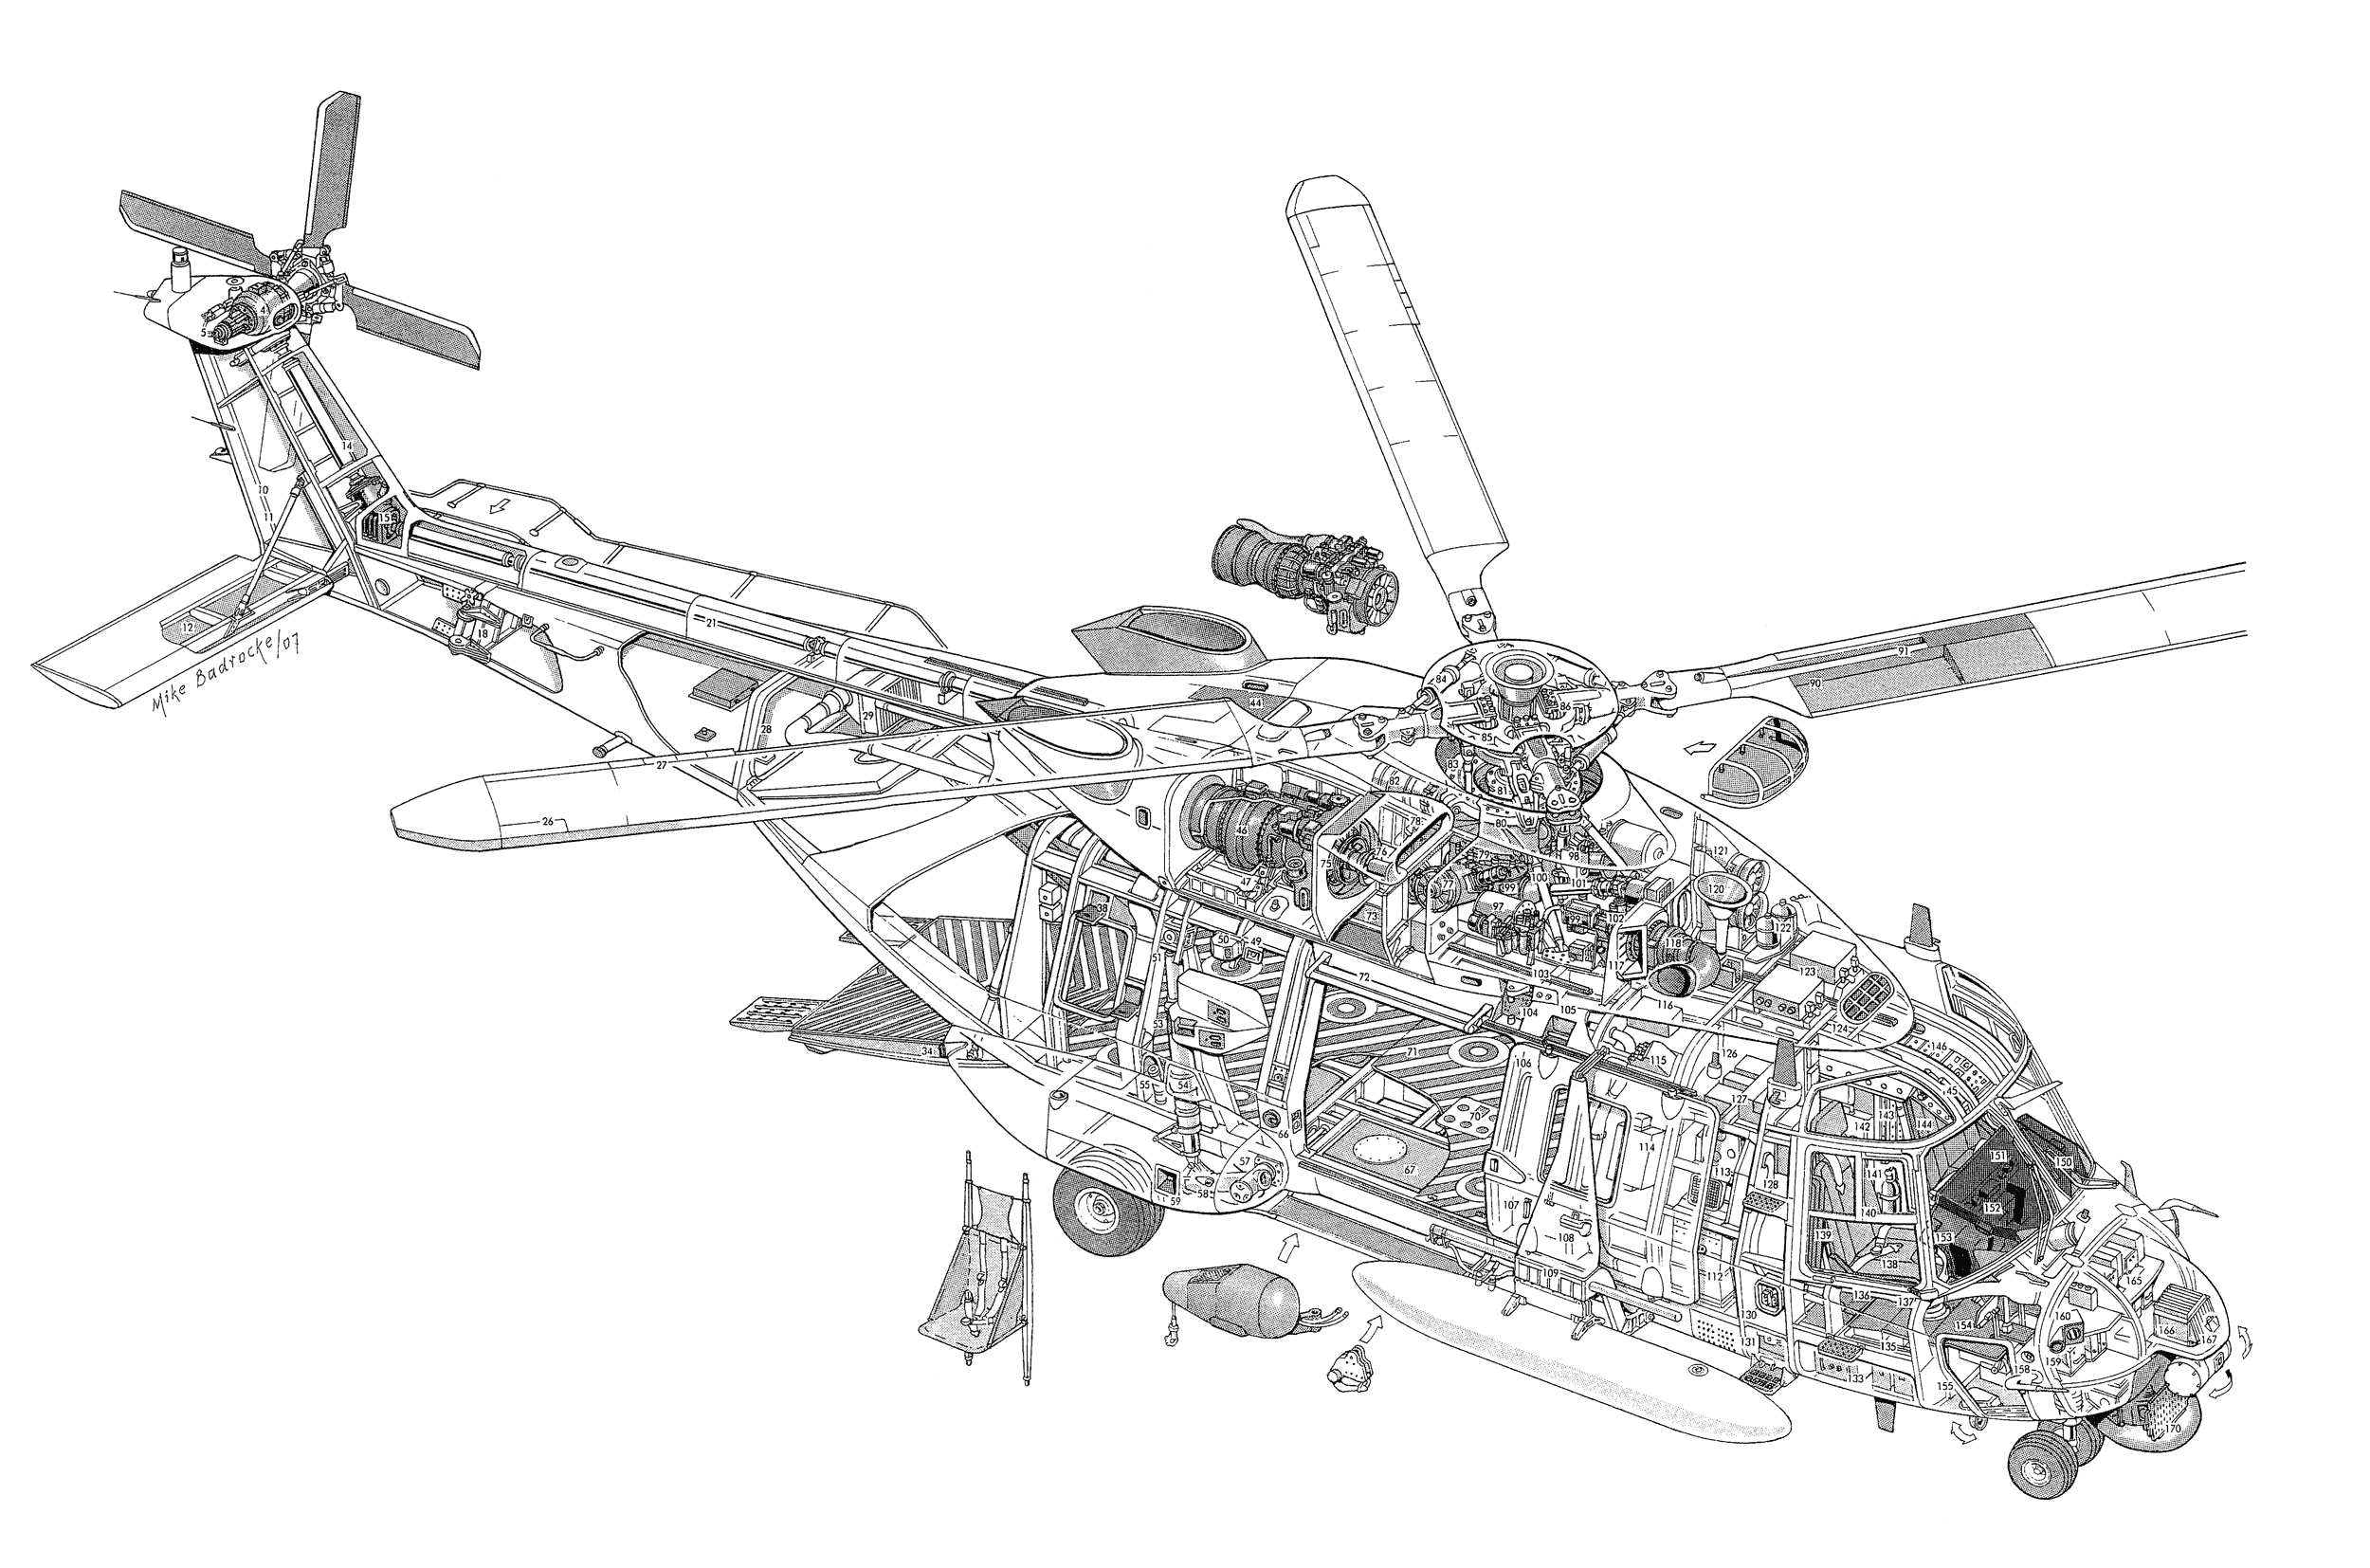 NHIndustries NH90 cutaway